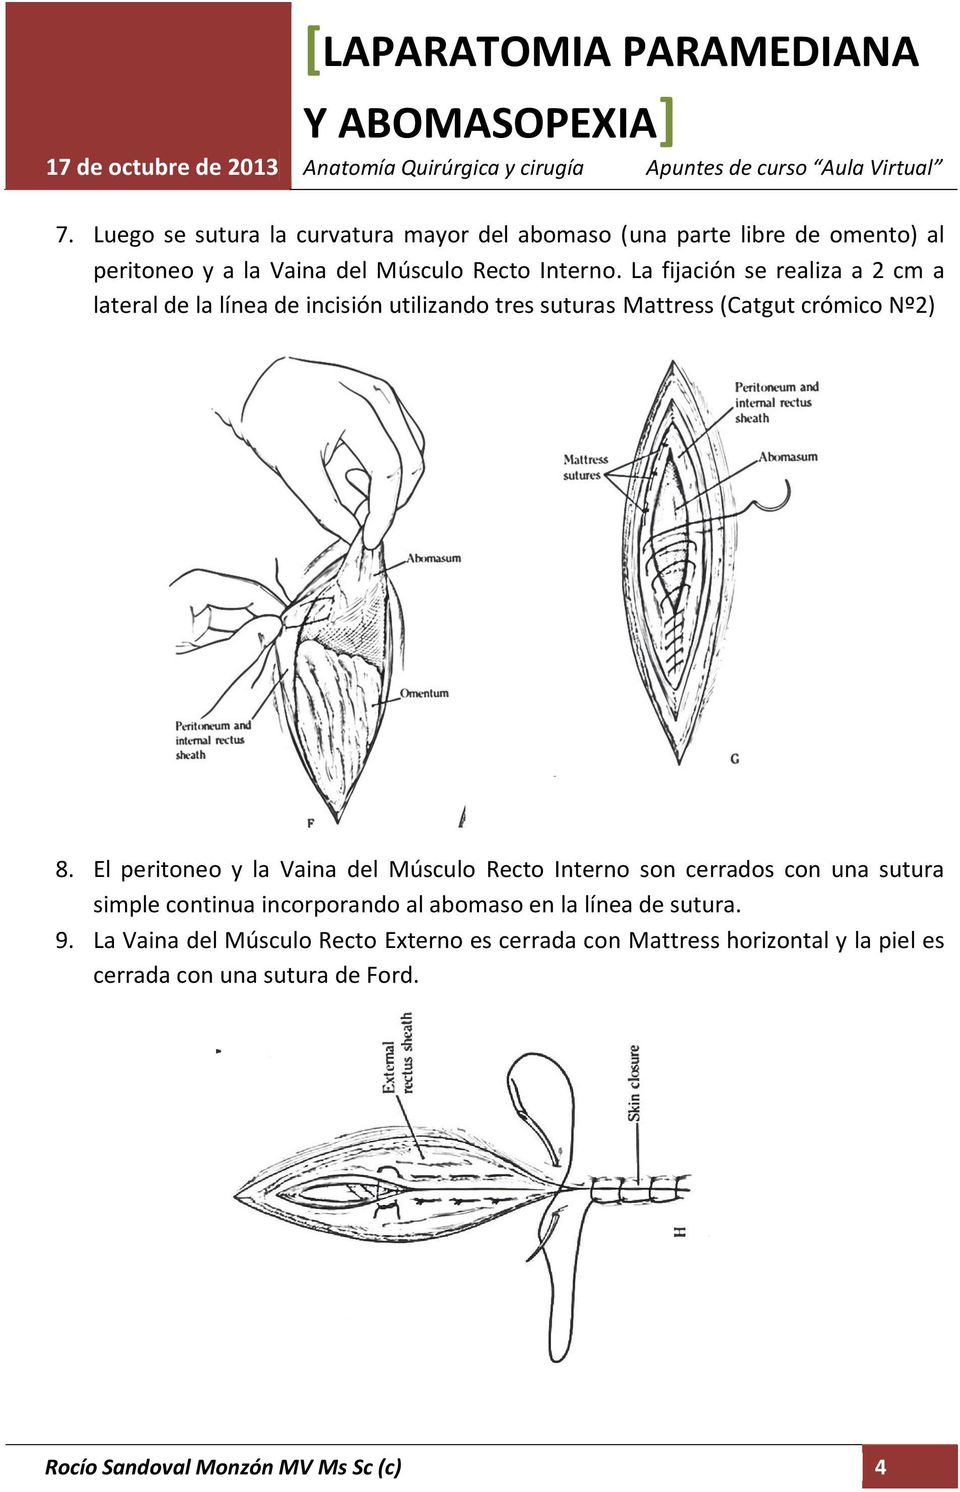 El peritoneo y la Vaina del Músculo Recto Interno son cerrados con una sutura simple continua incorporando al abomaso en la línea de